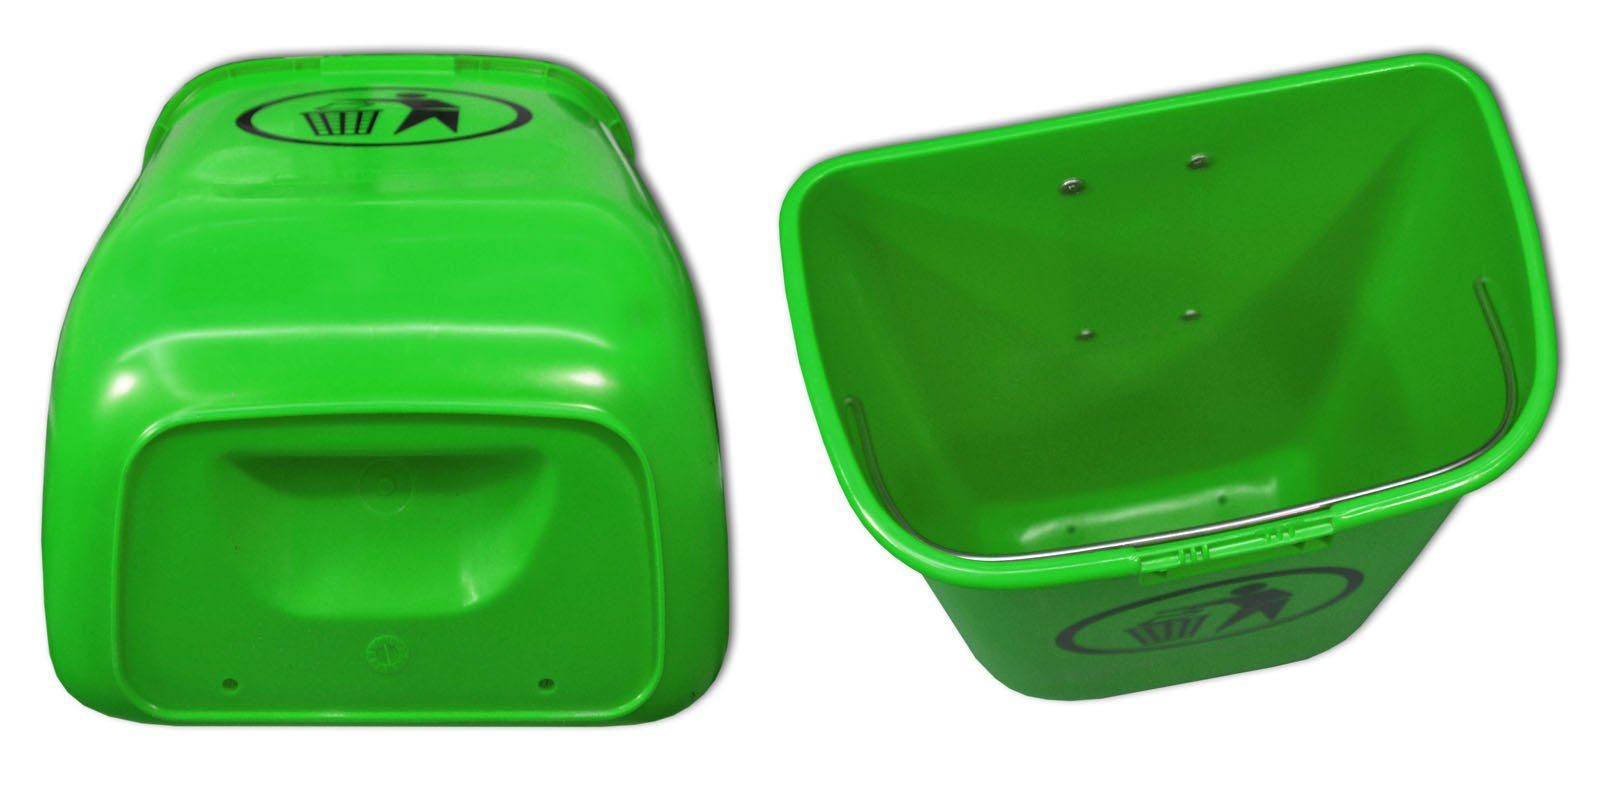 Regenhaube Abfallbehälter Papierkorb Set SULO Mülleimer Sulo Original mit grün